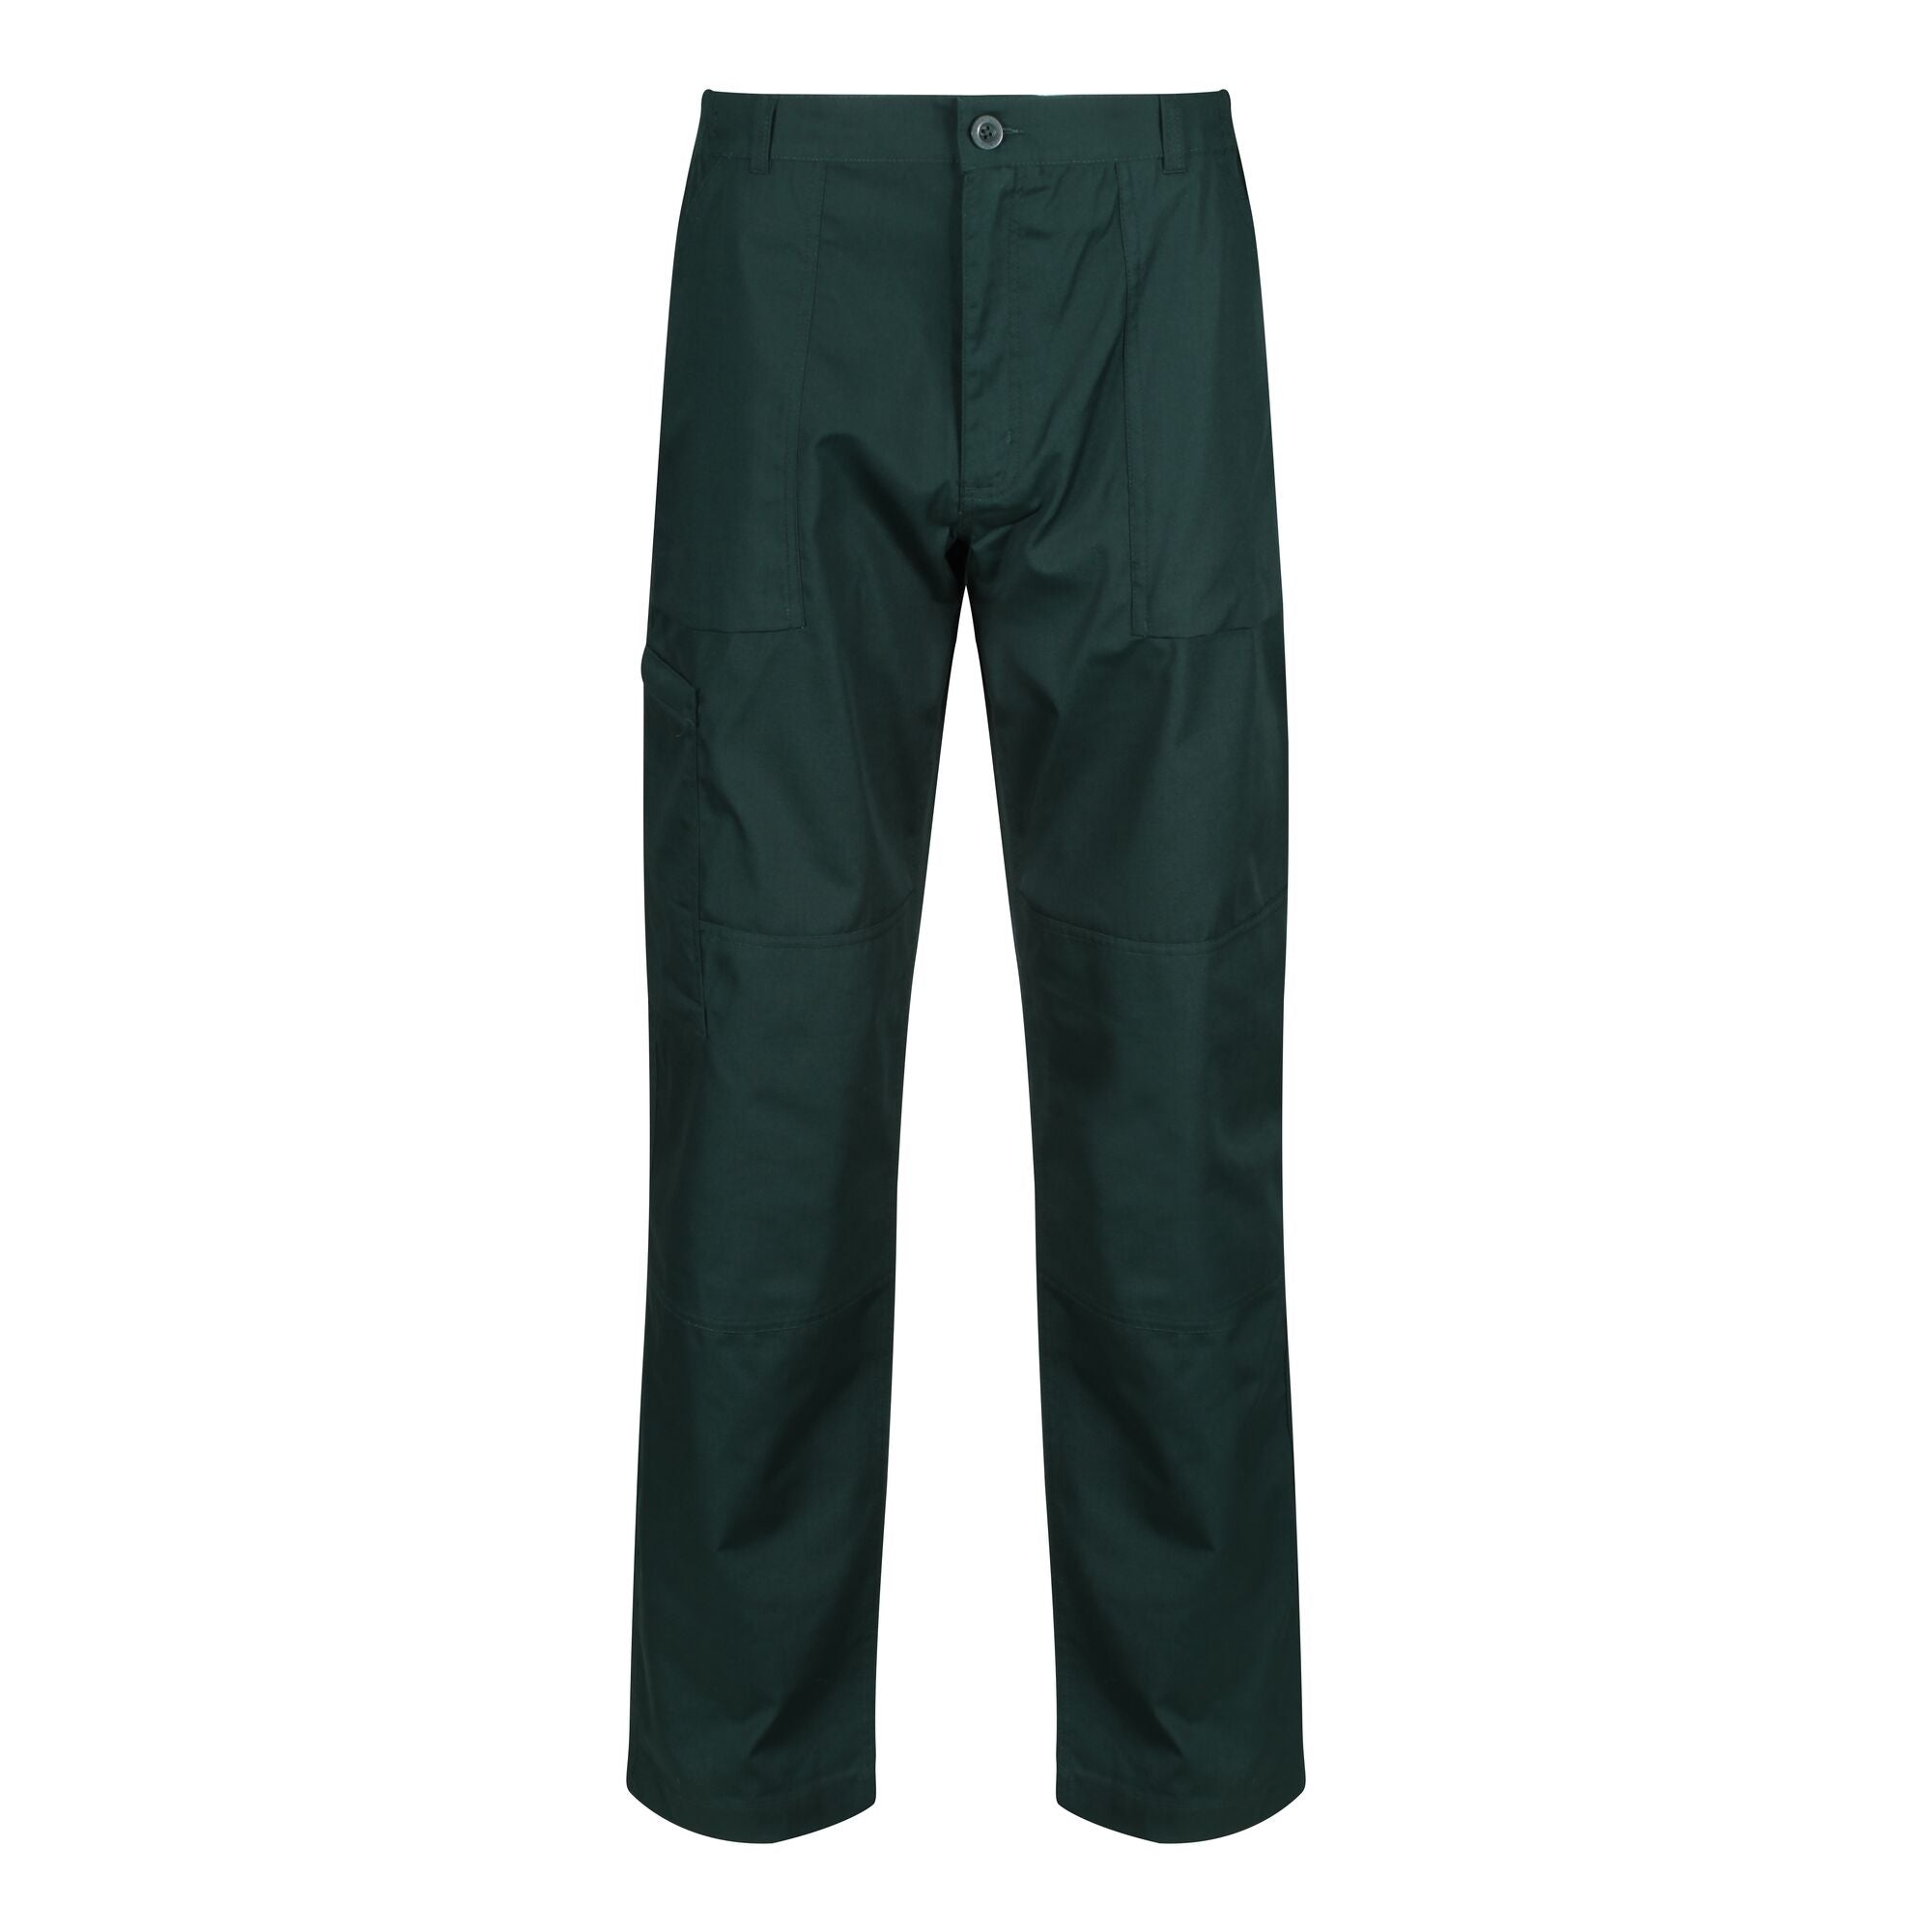 Regatta Action Work Trousers (Short Leg) - Green